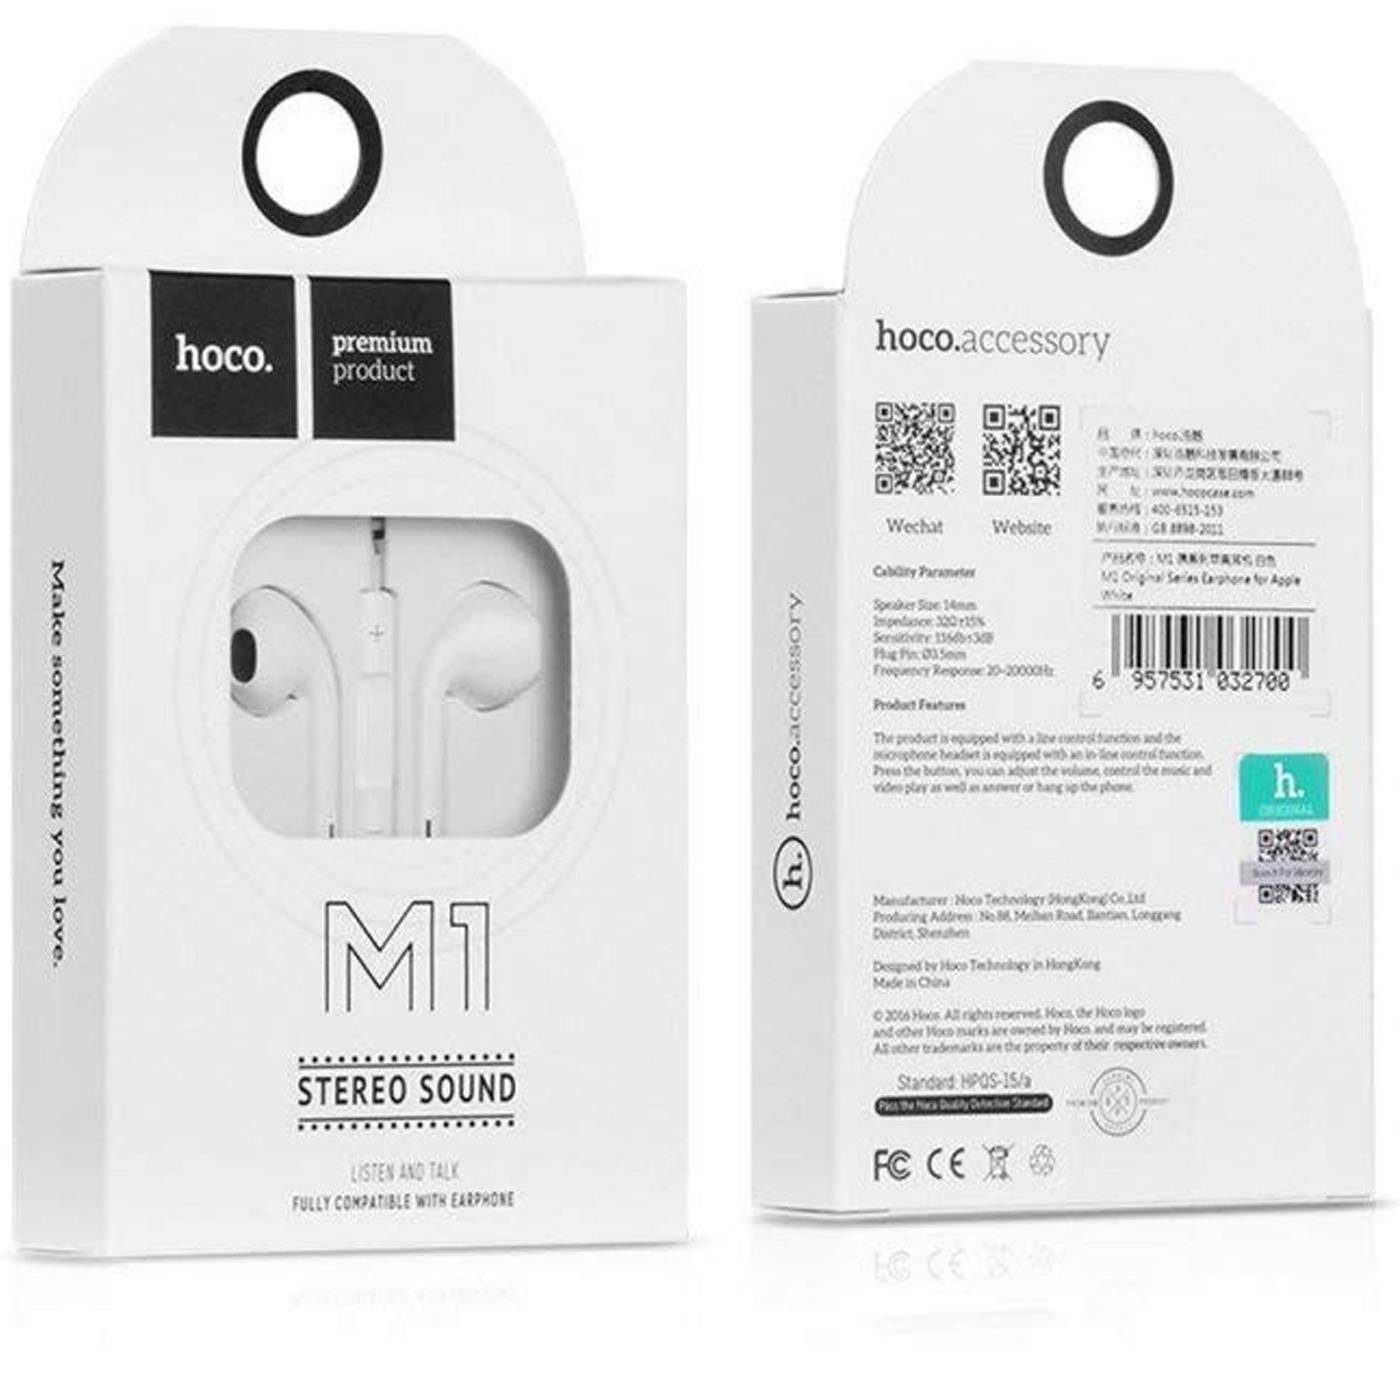 HOCO M1 3,5mm Klinke Smartphone-Headset (Köpfhörer mm Headset Mikrofon Beat) 3.5 In Ear Klinke mit